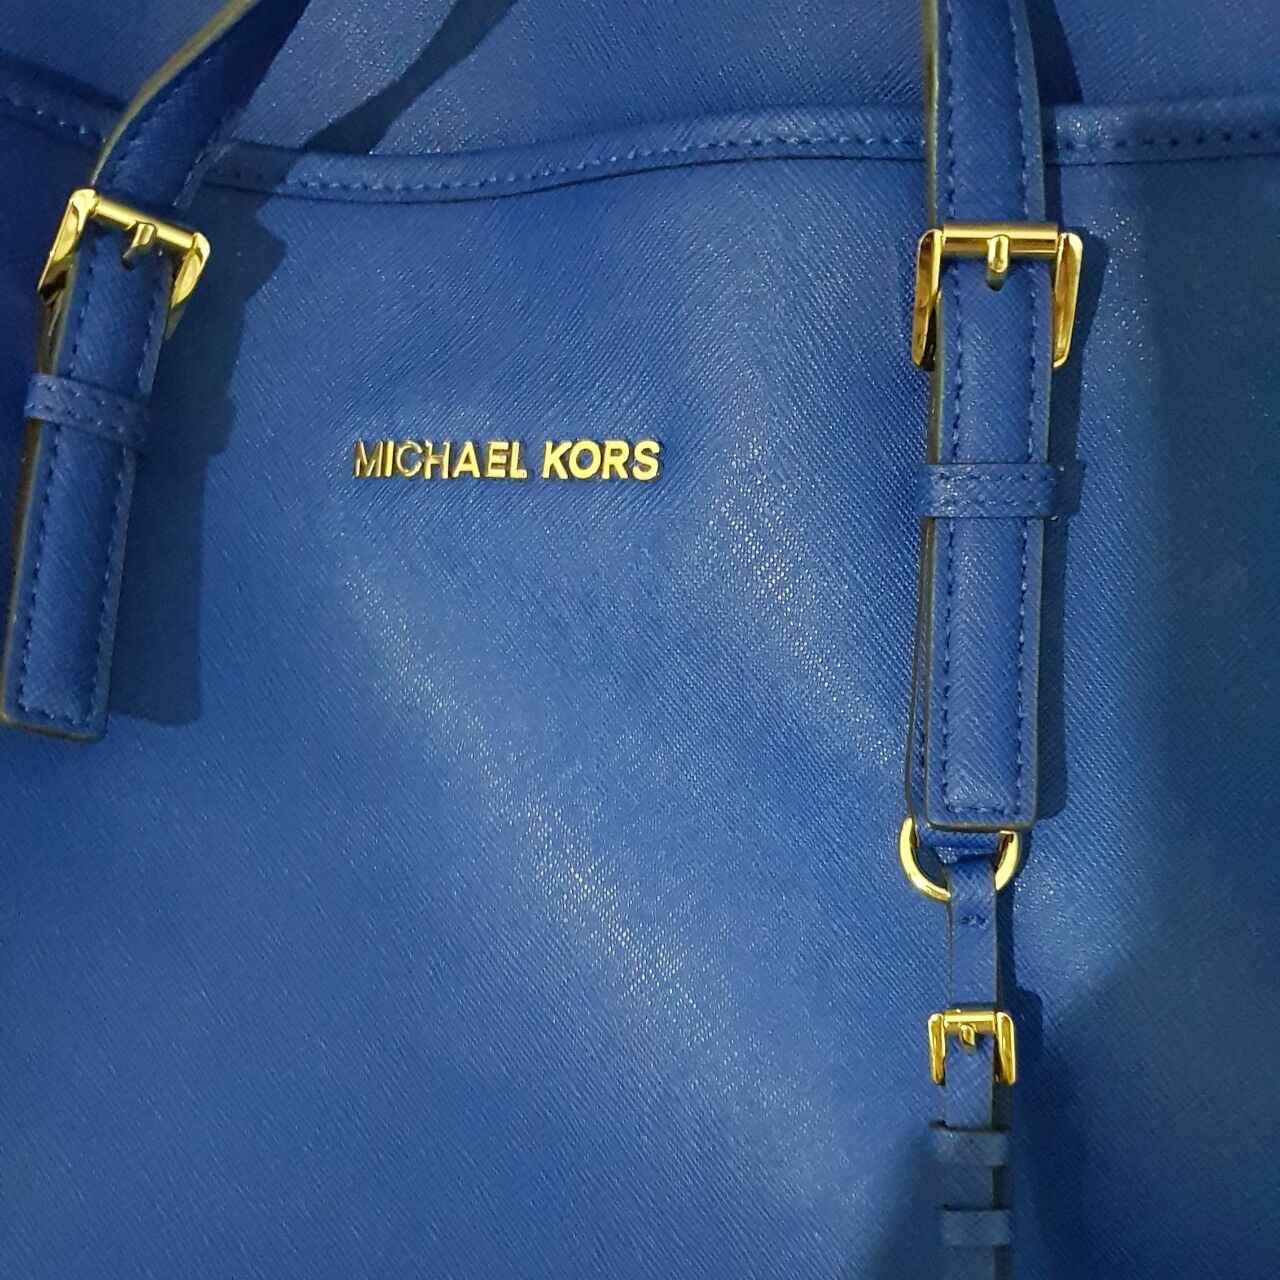 Michael Kors Blue Organic Tote Bag